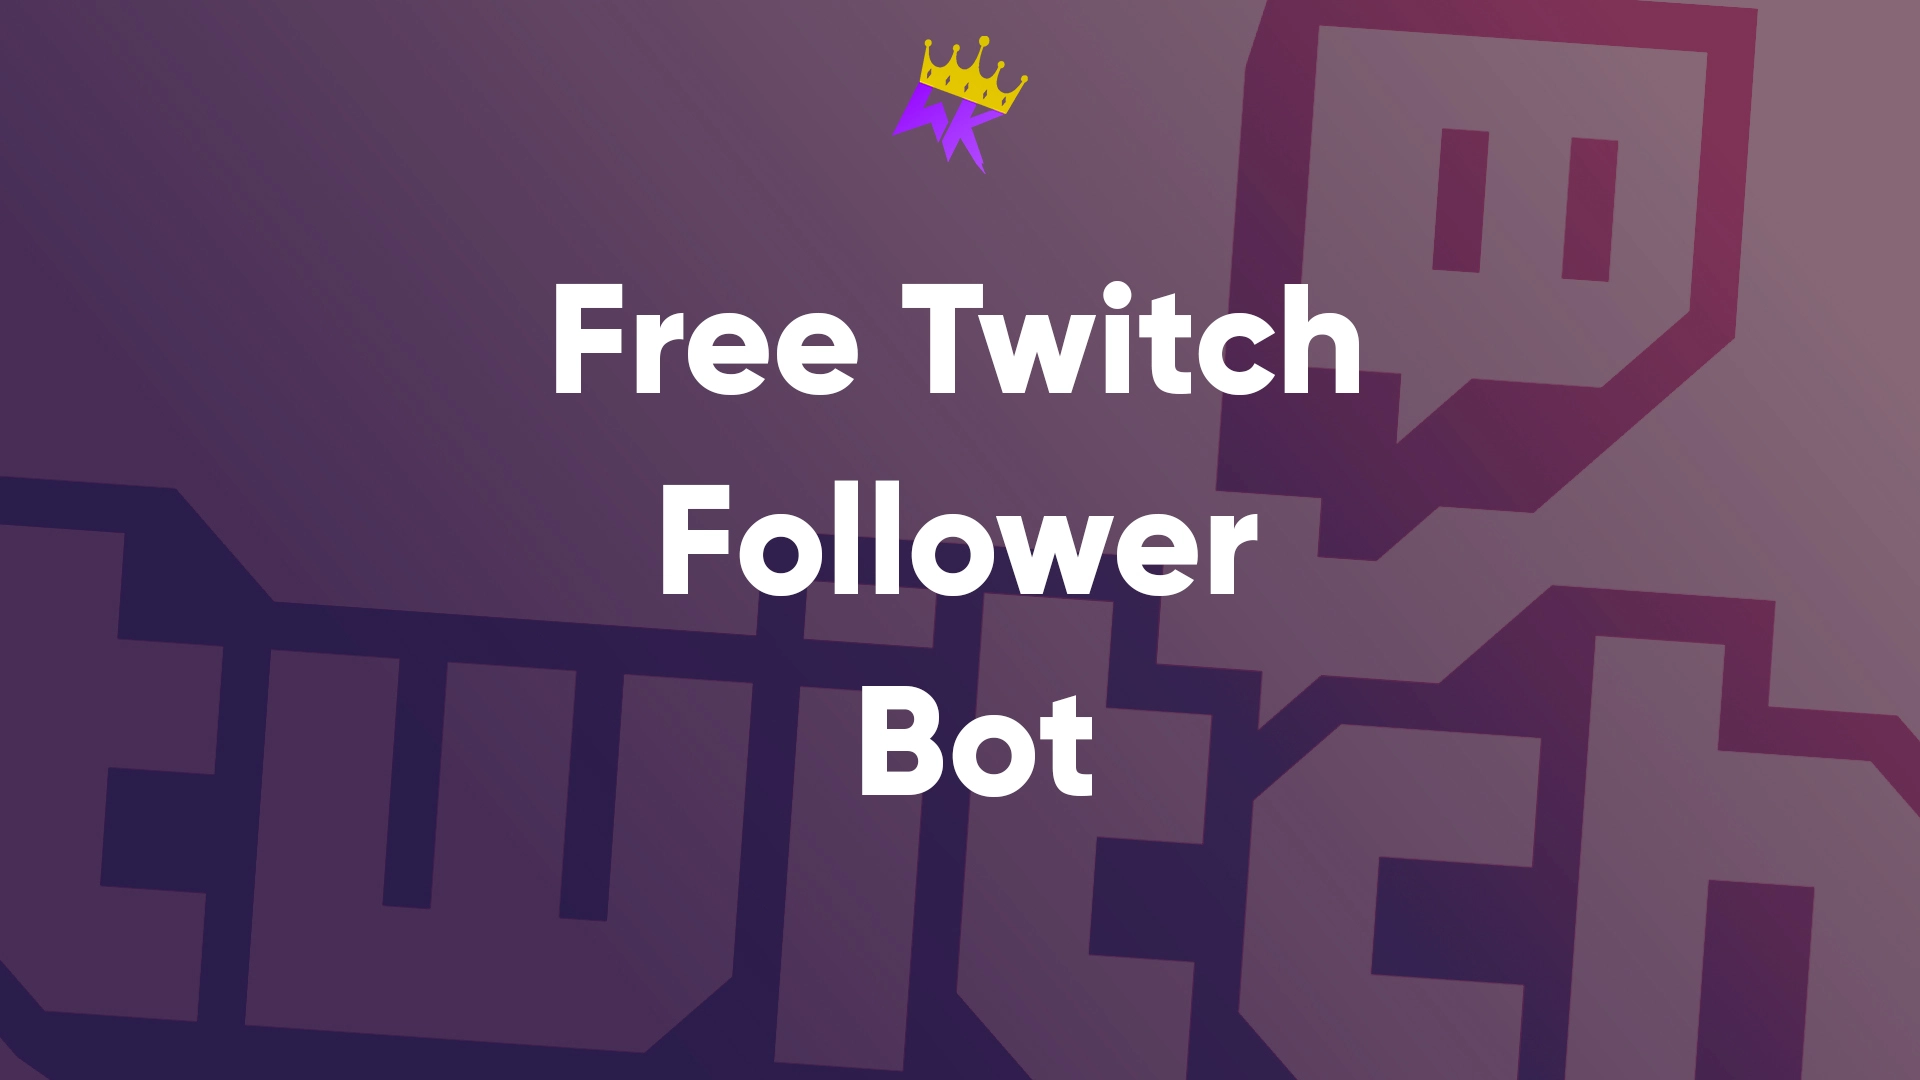 Free Twitch Follower Bot